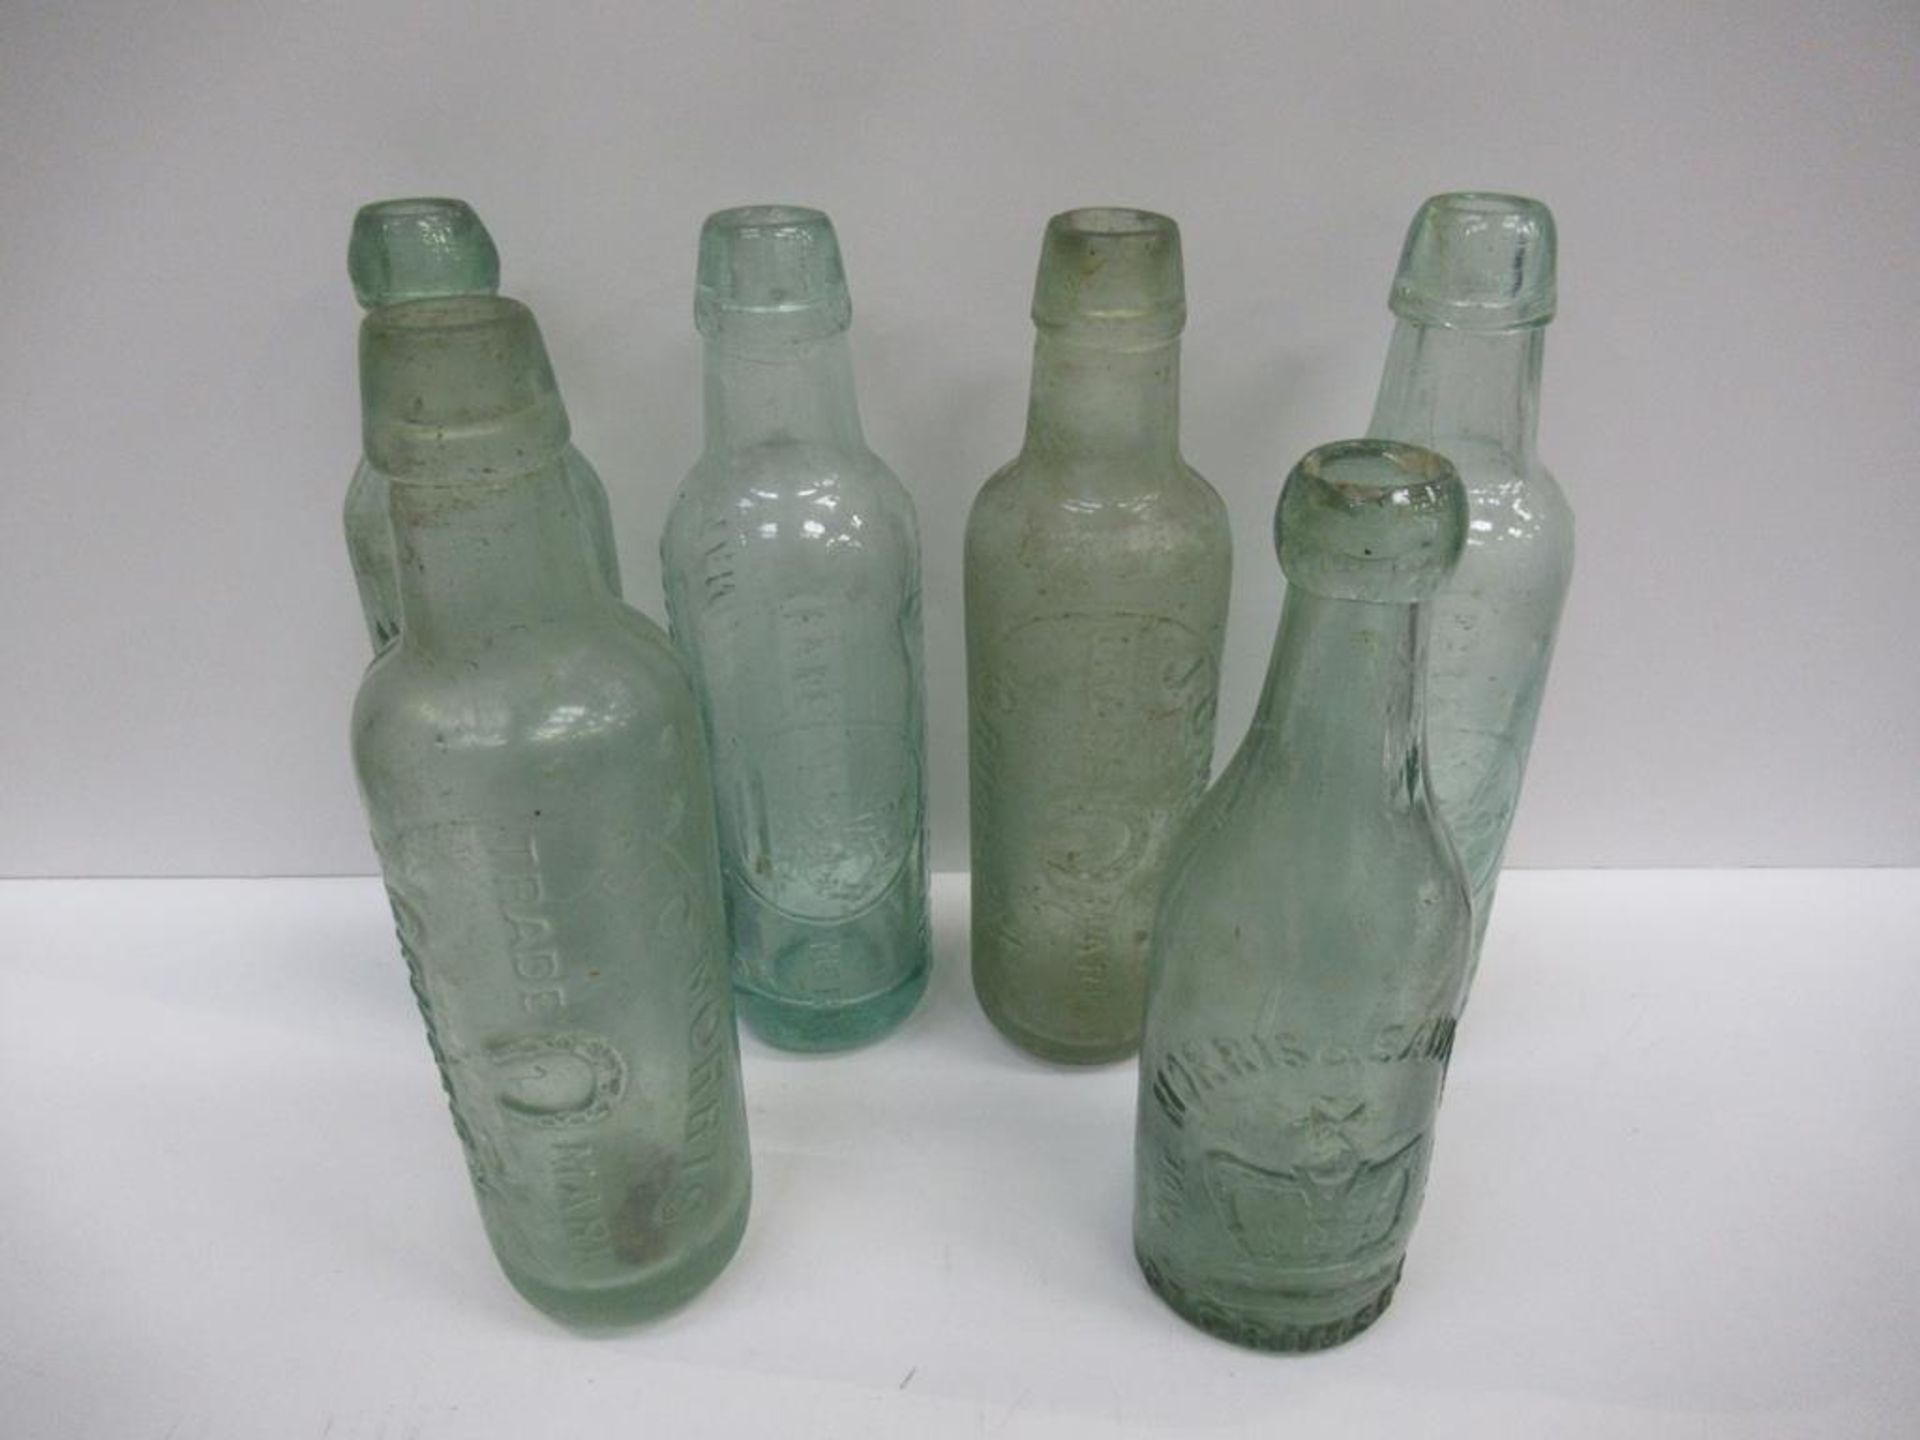 6x Grimsby Morris & Saweard (4) and J.C. Morris (2) bottles